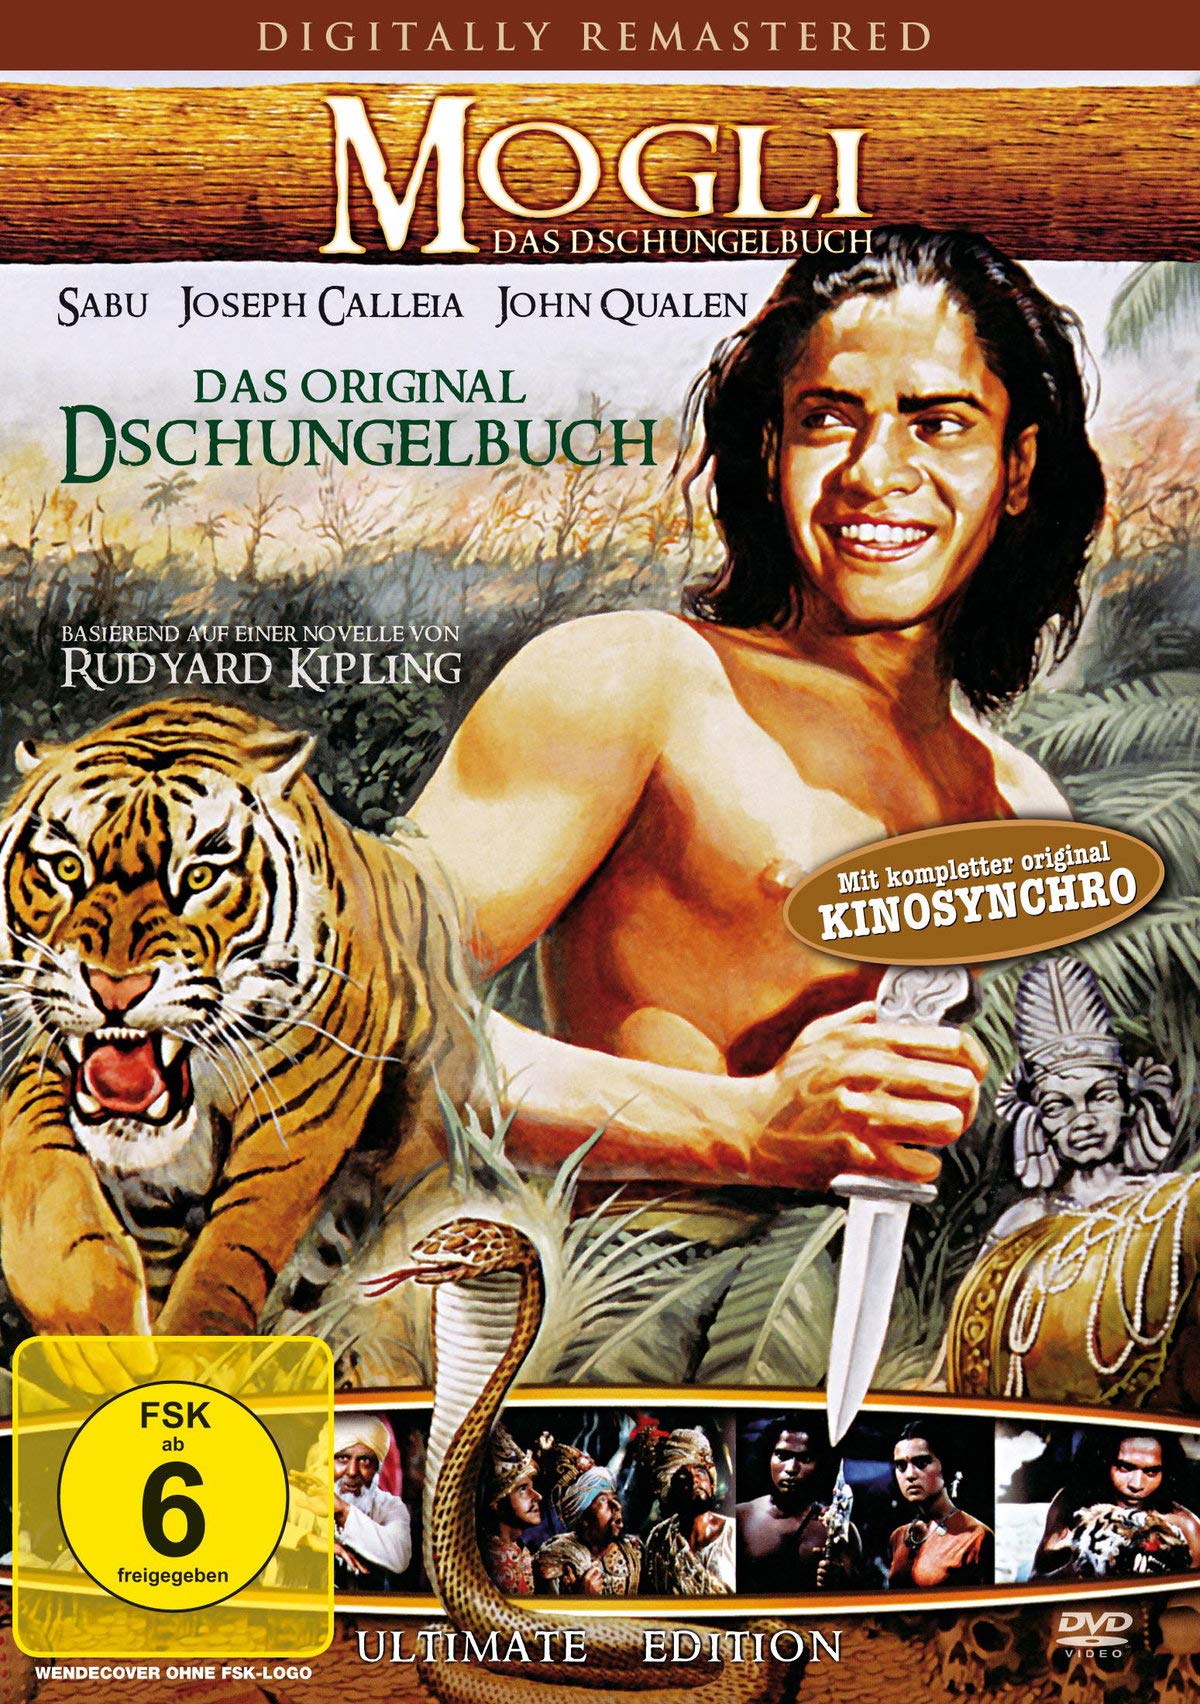 Mogli - Das Dschungelbuch [DVD]